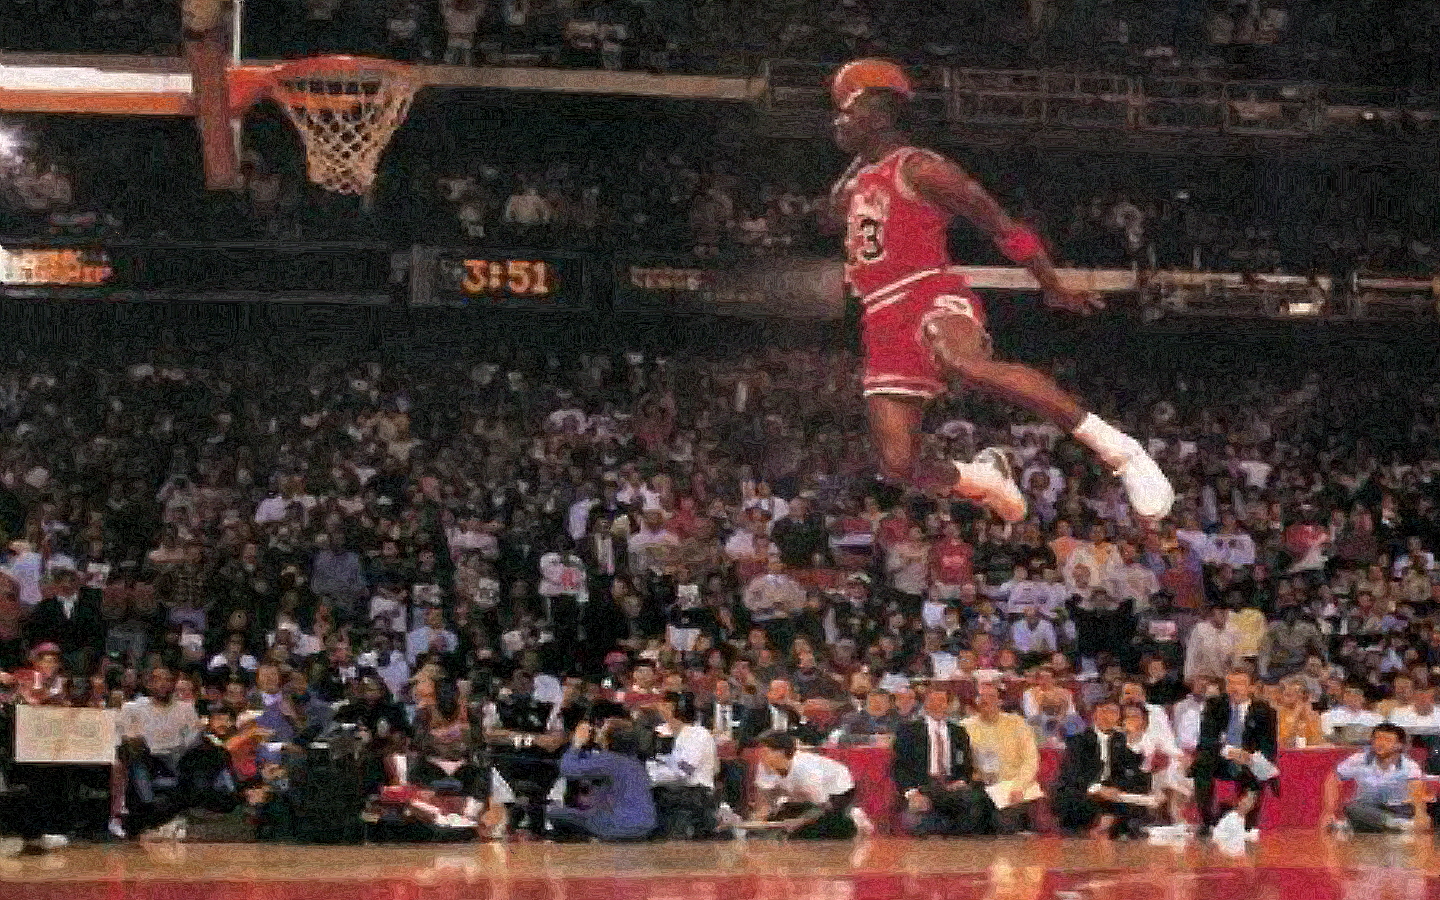 Michael Jordan Screensavers Wallpaper - WallpaperSafari